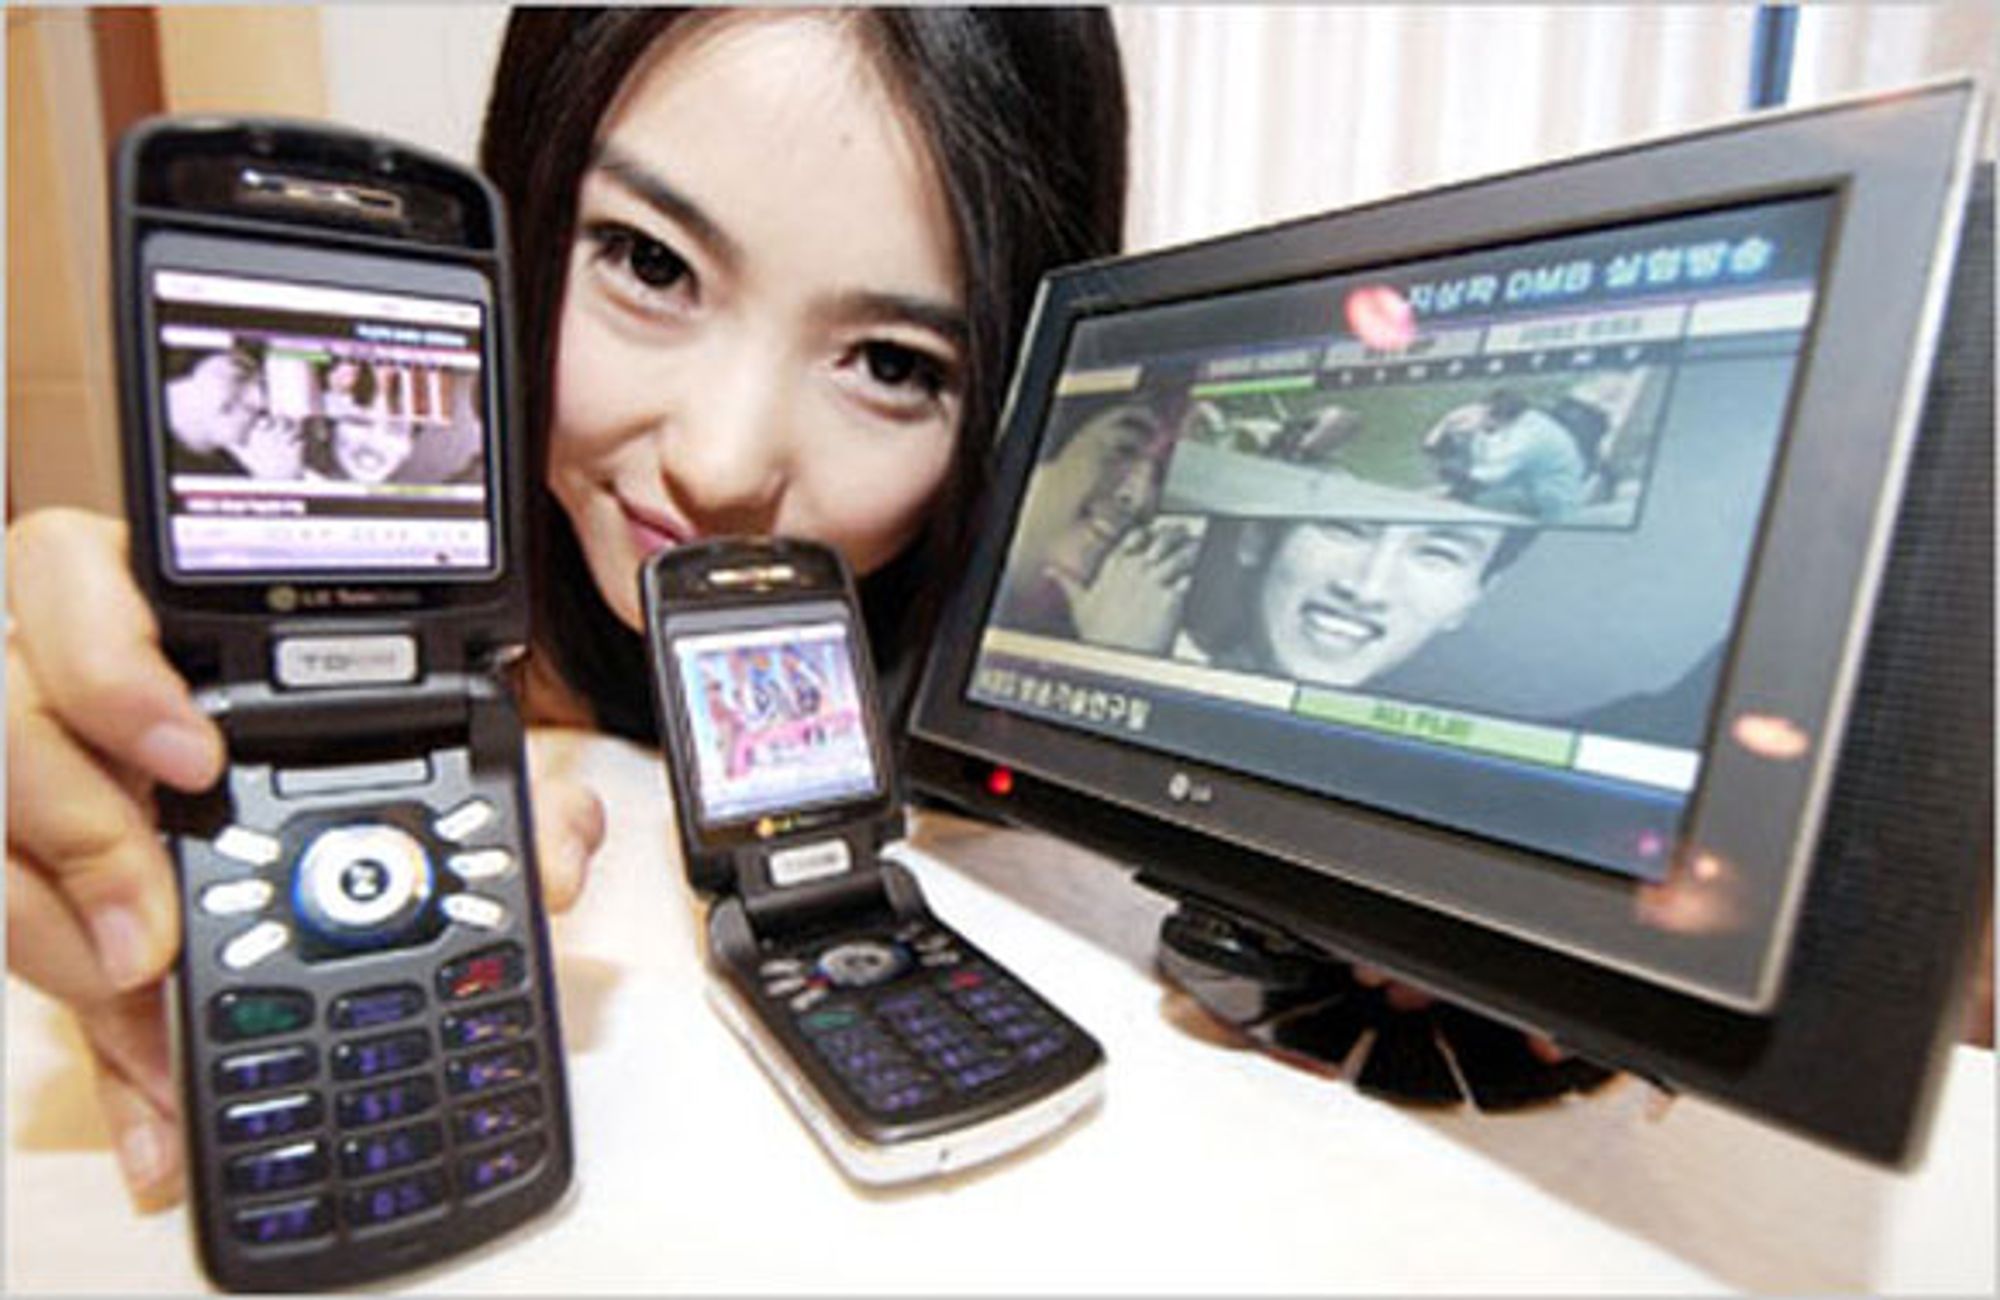 Avviser DMB for mobil-TV